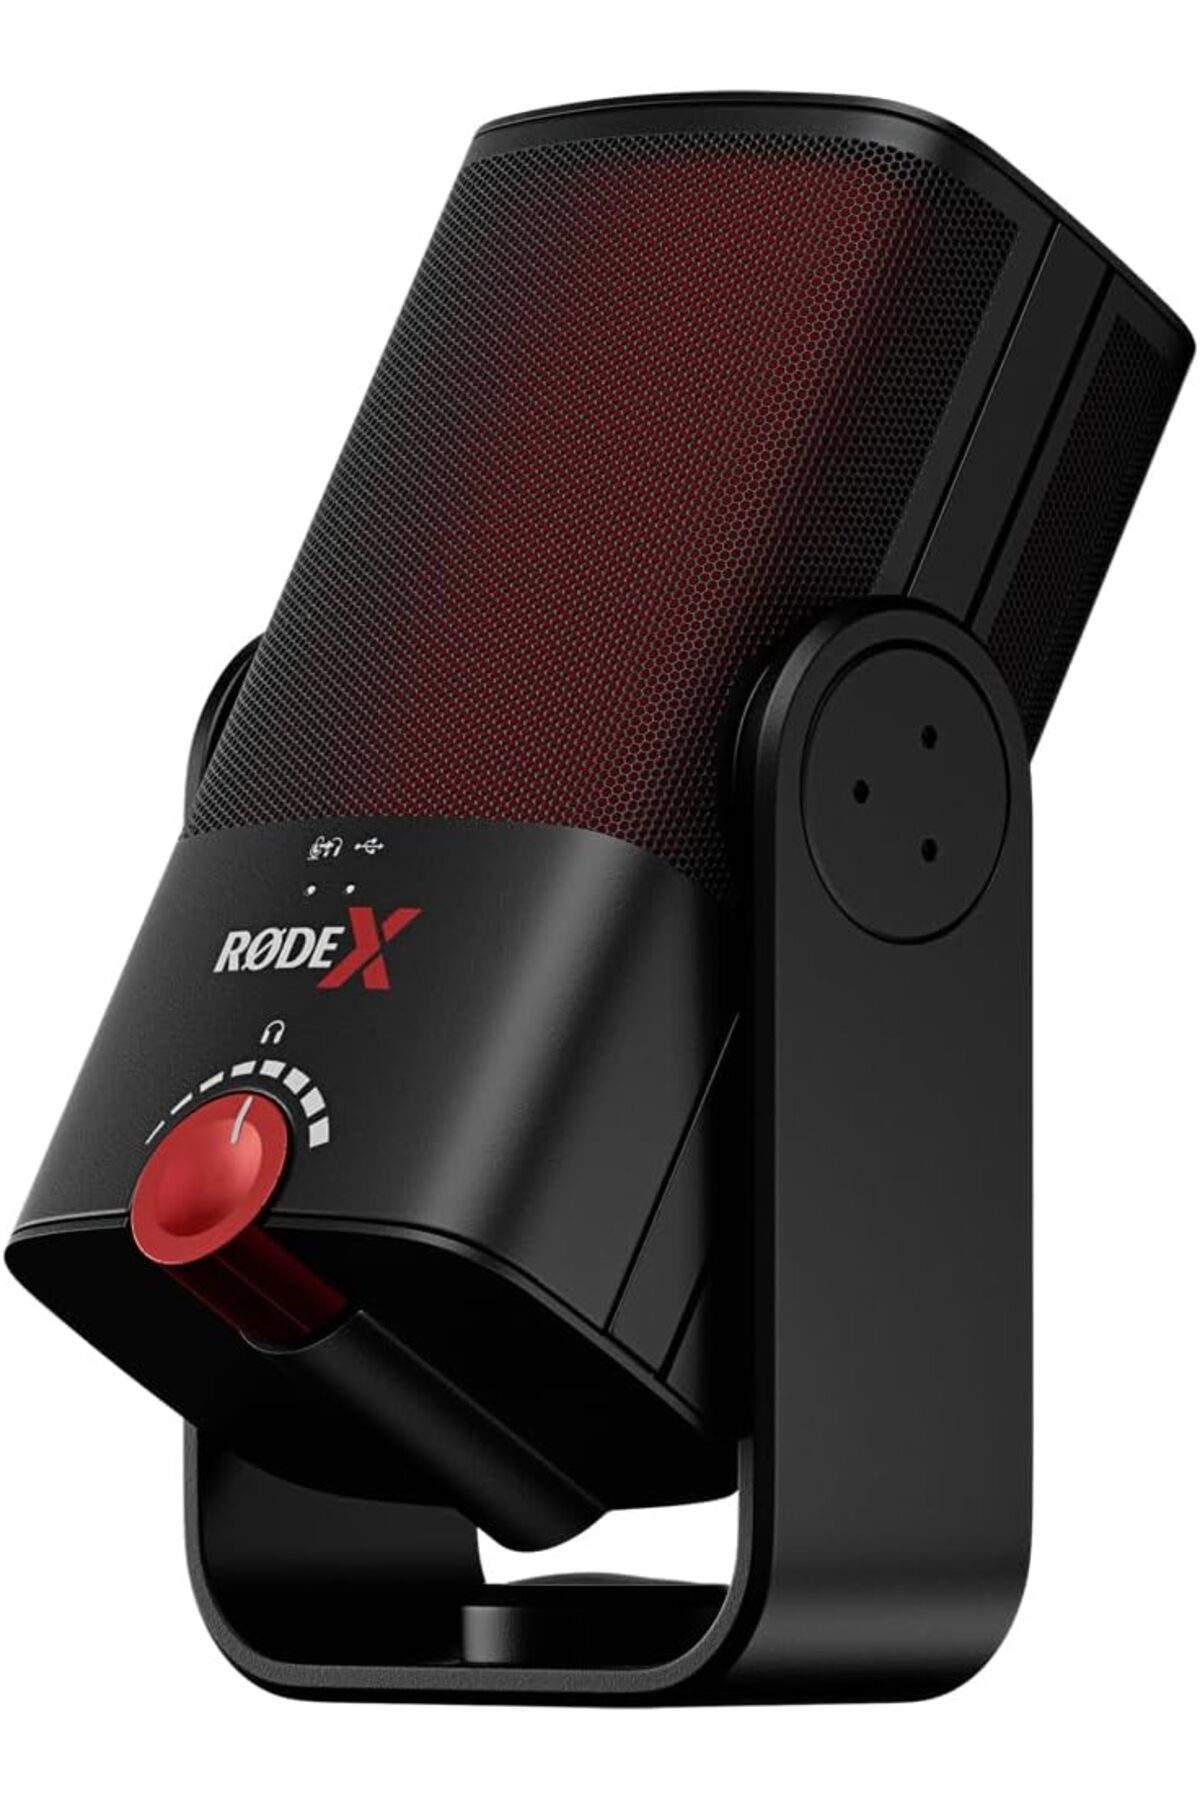 Rode USB Mikrofon, Yayıncılar ve Oyuncular İçin Profesyonel USB Kondenser Mikrofon ve Sanal Miksleme